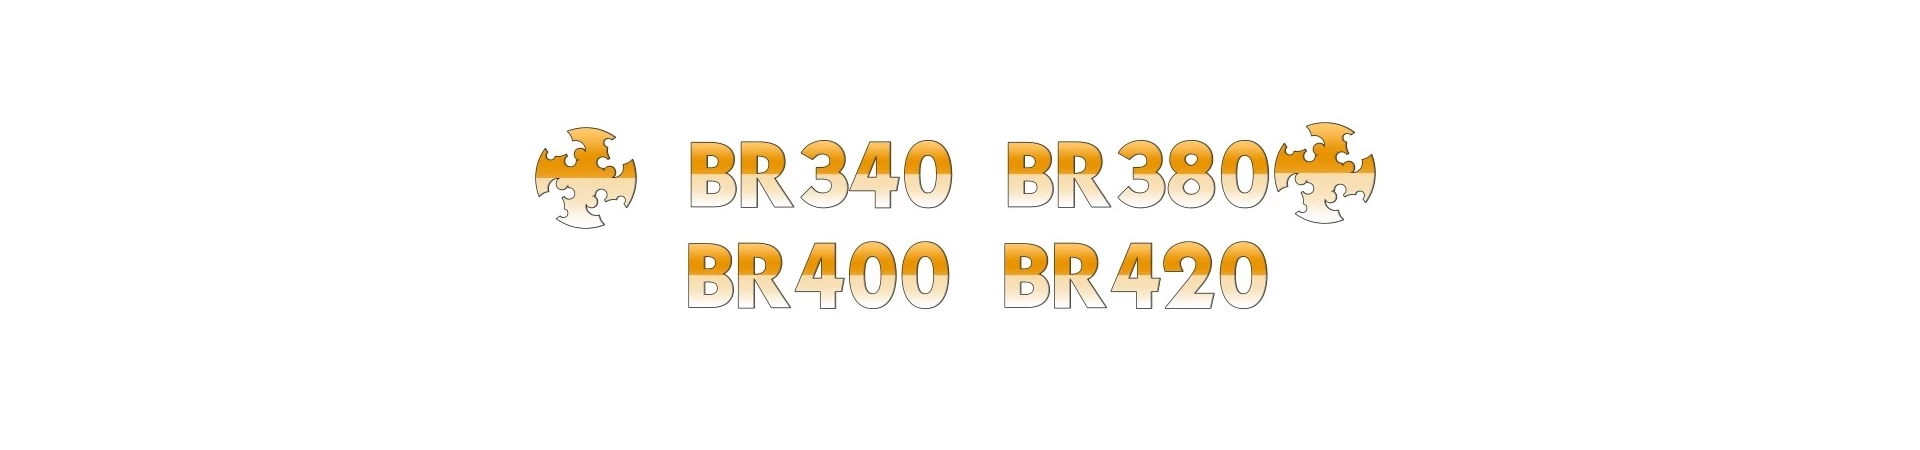 REPUESTOS para Sopladora STIHL BR340, BR380, BR400 y BR420